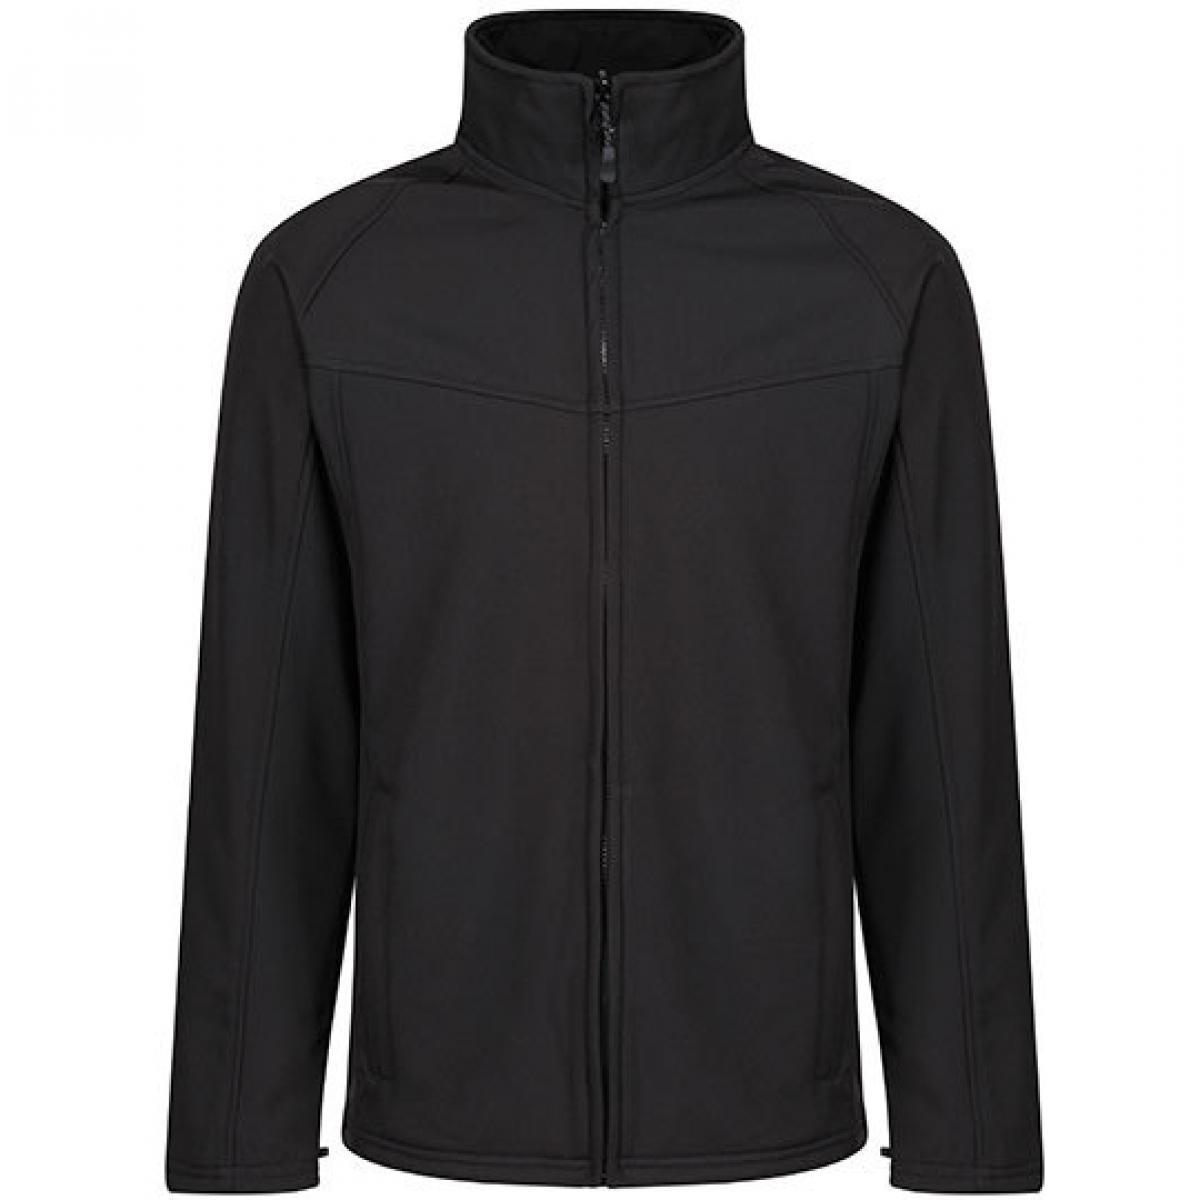 Hersteller: Regatta Herstellernummer: TRA642 Artikelbezeichnung: Herren Uproar Softshell Jacket Farbe: Black/Black